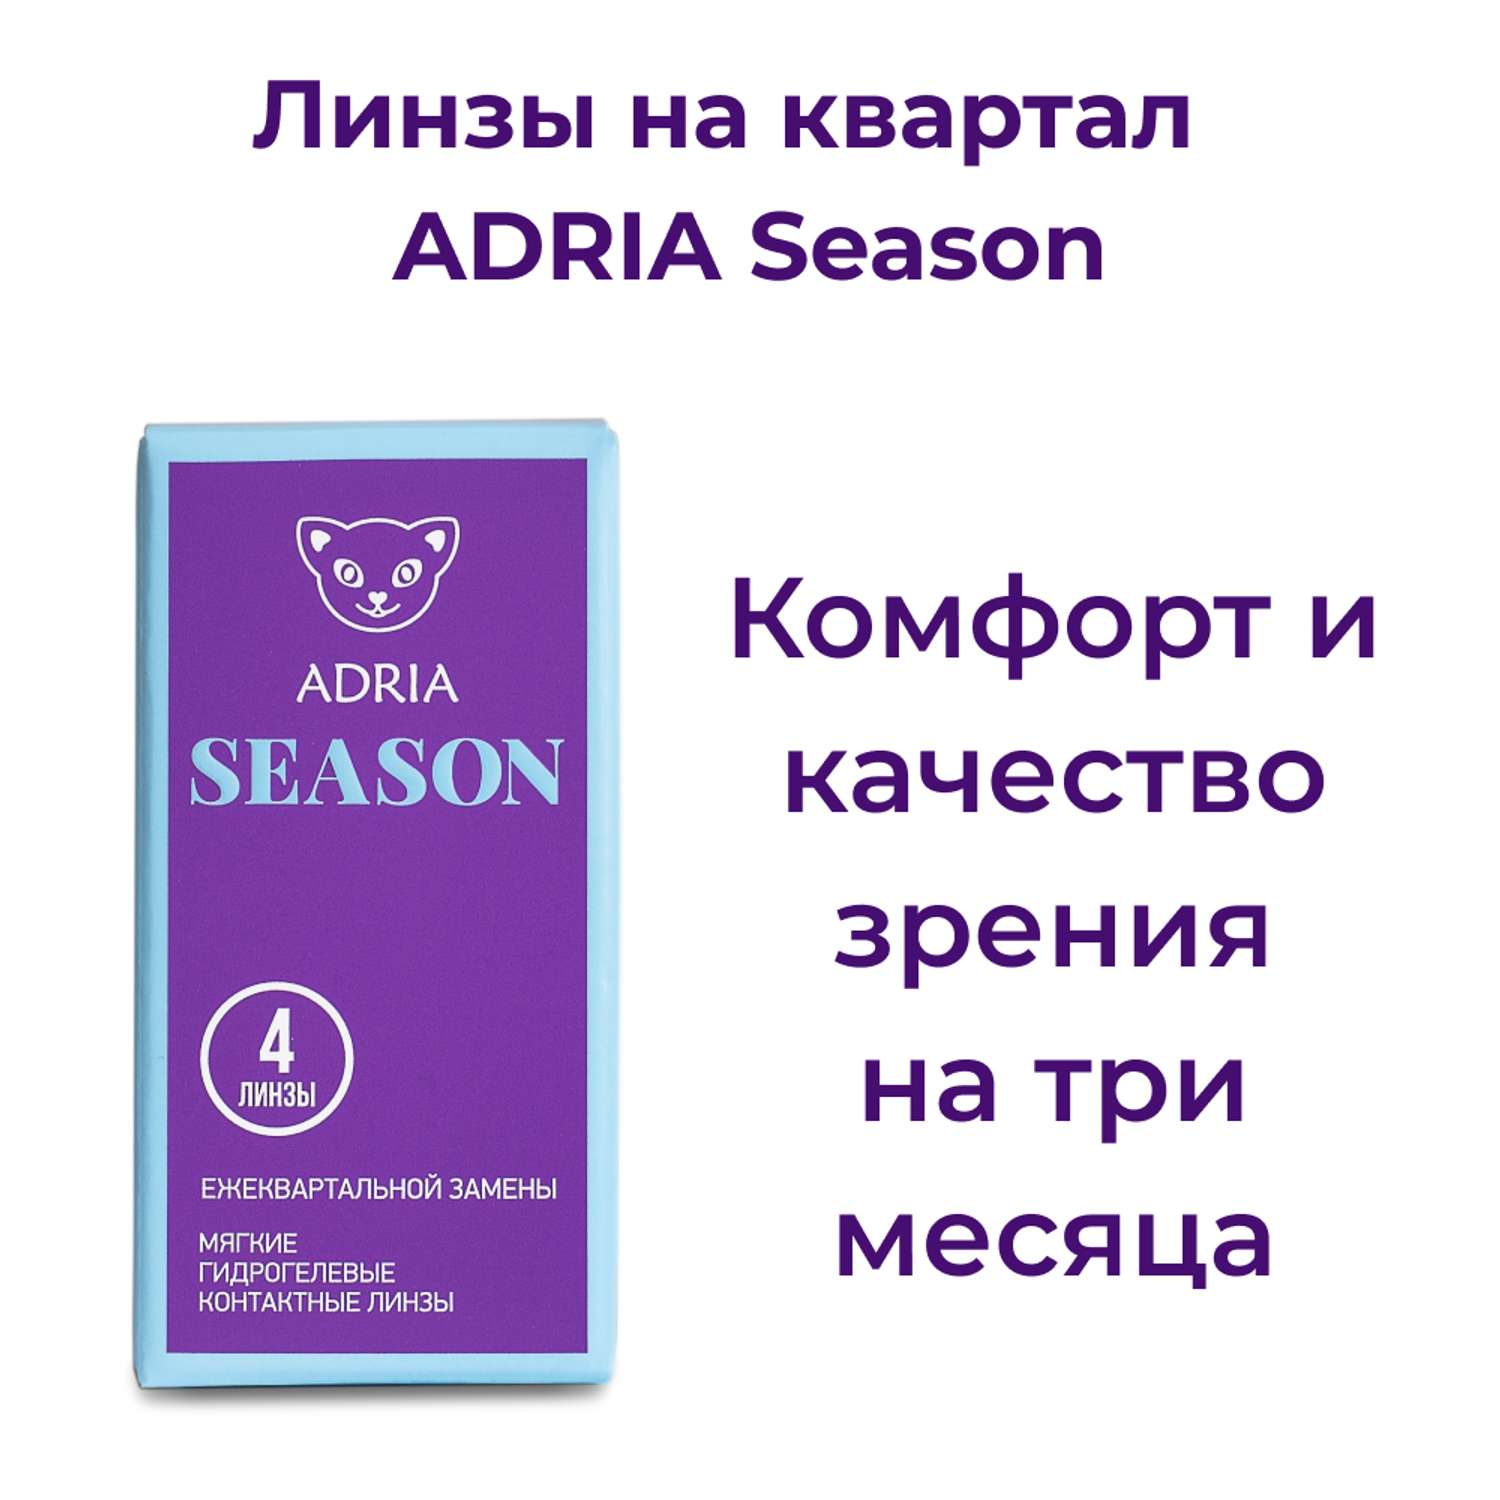 Контактные линзы ADRIA Season 4 линзы R 8.6 -4.25 - фото 2